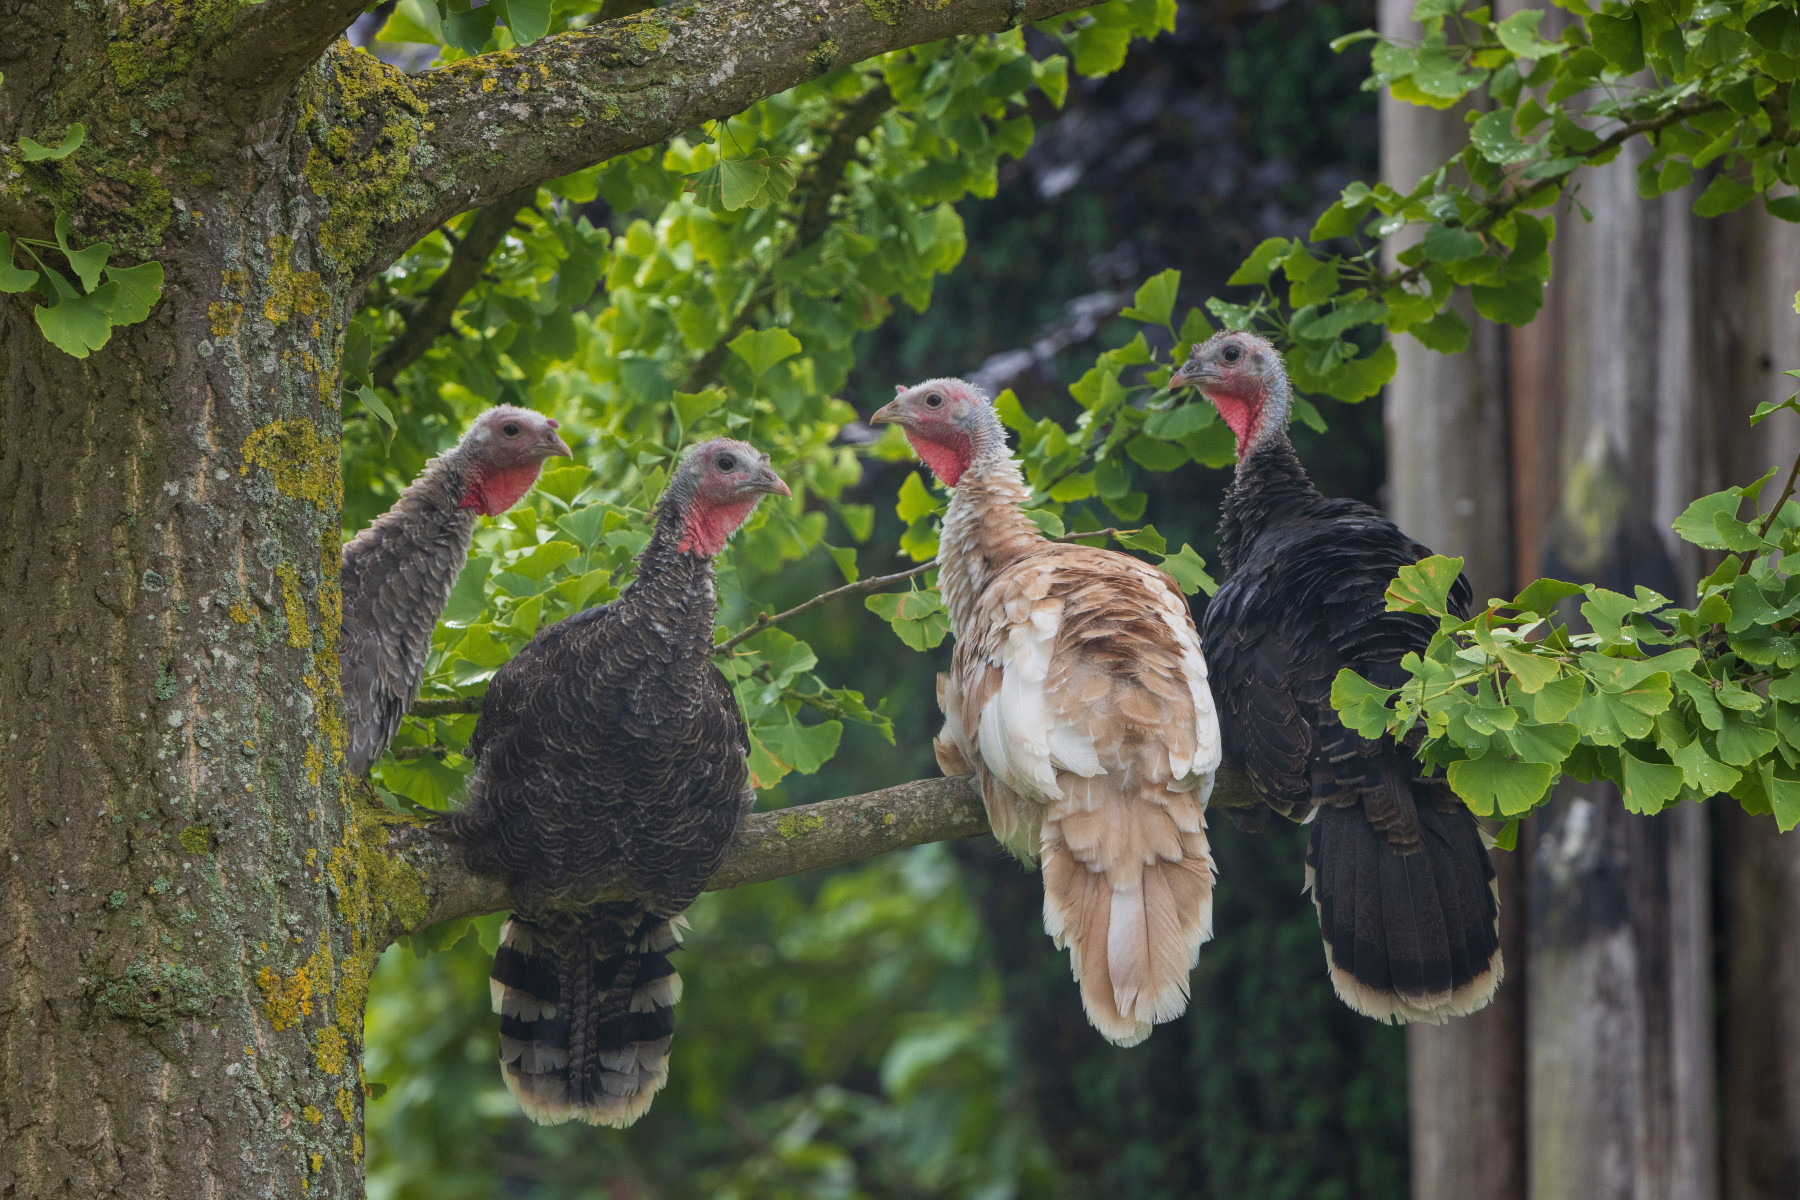 Wild turkeys sitting in a tree